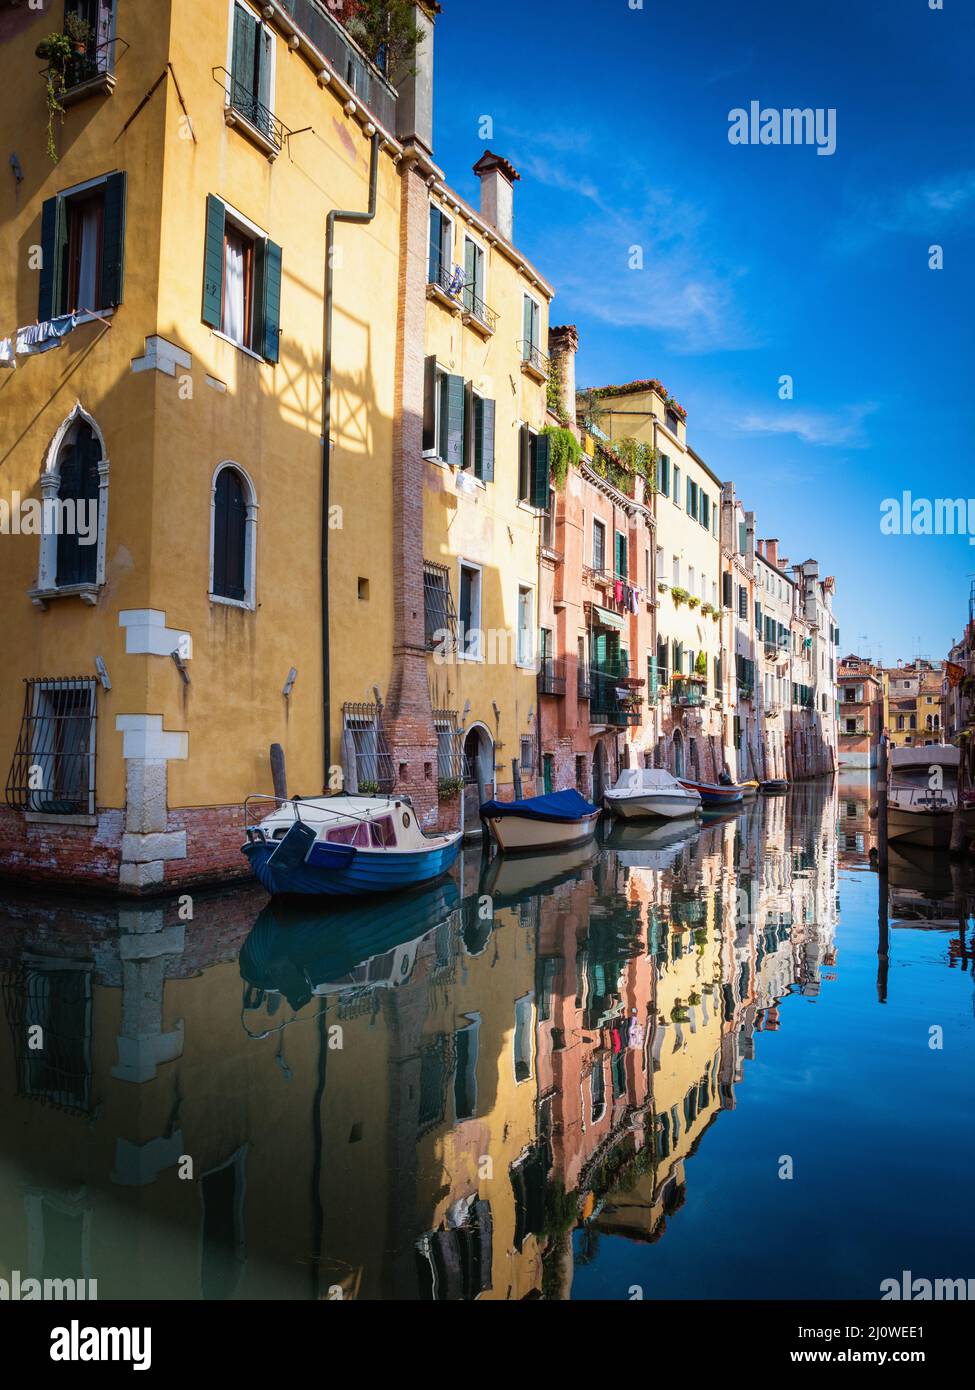 Case colorate nella vecchia via medievale di Venezia Foto Stock